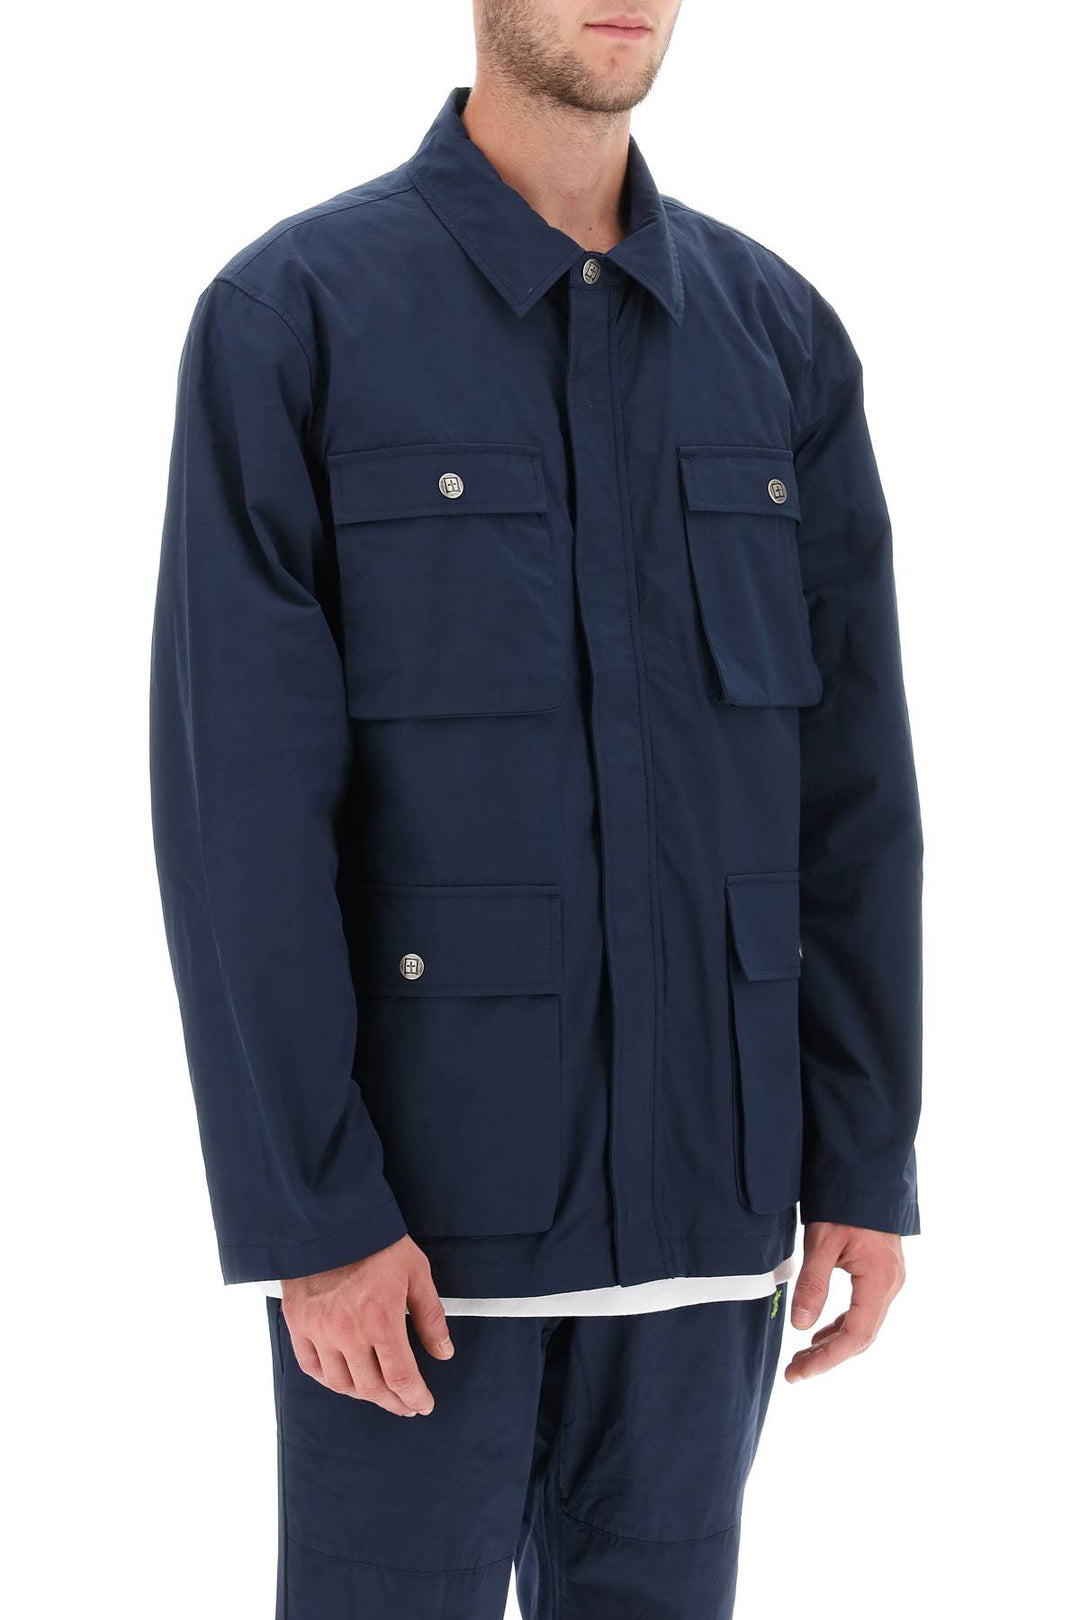 Ksubi 'Detonate' Technical Cotton Jacket   Blu